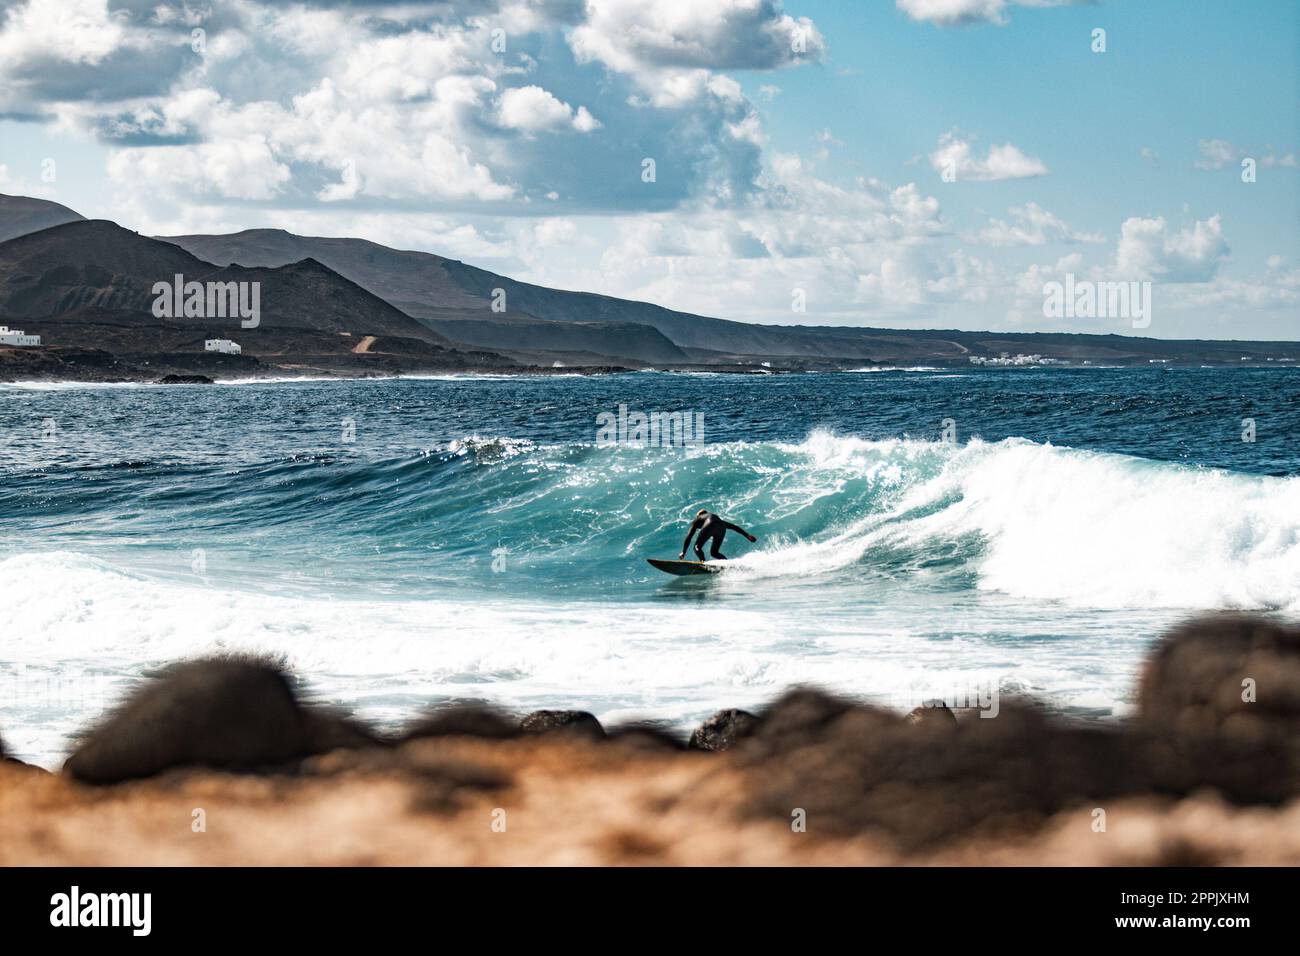 Côte sauvage rocheuse de surf spot la Santa Lanzarote, îles Canaries, Espagne. Surfeur sur une grande vague dans la baie rocheuse, volcan montagne en arrière-plan. Banque D'Images